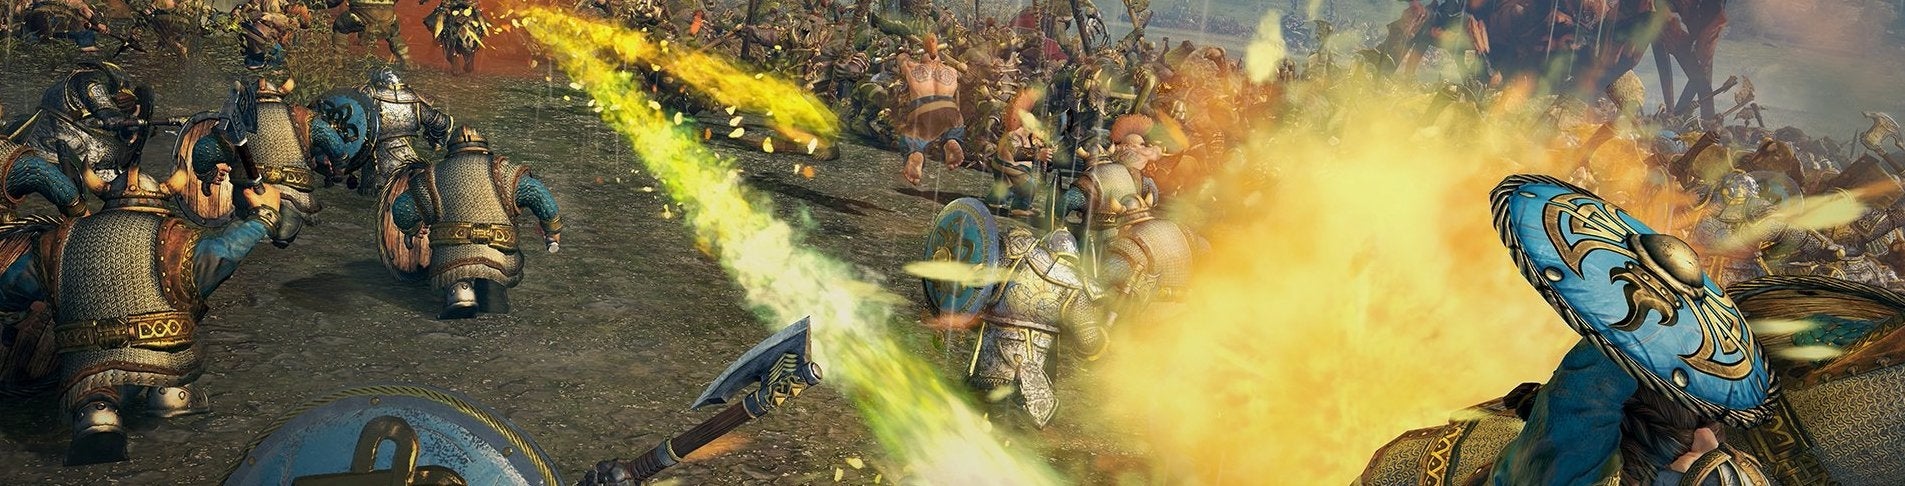 Image for Total War: Warhammer v kostce